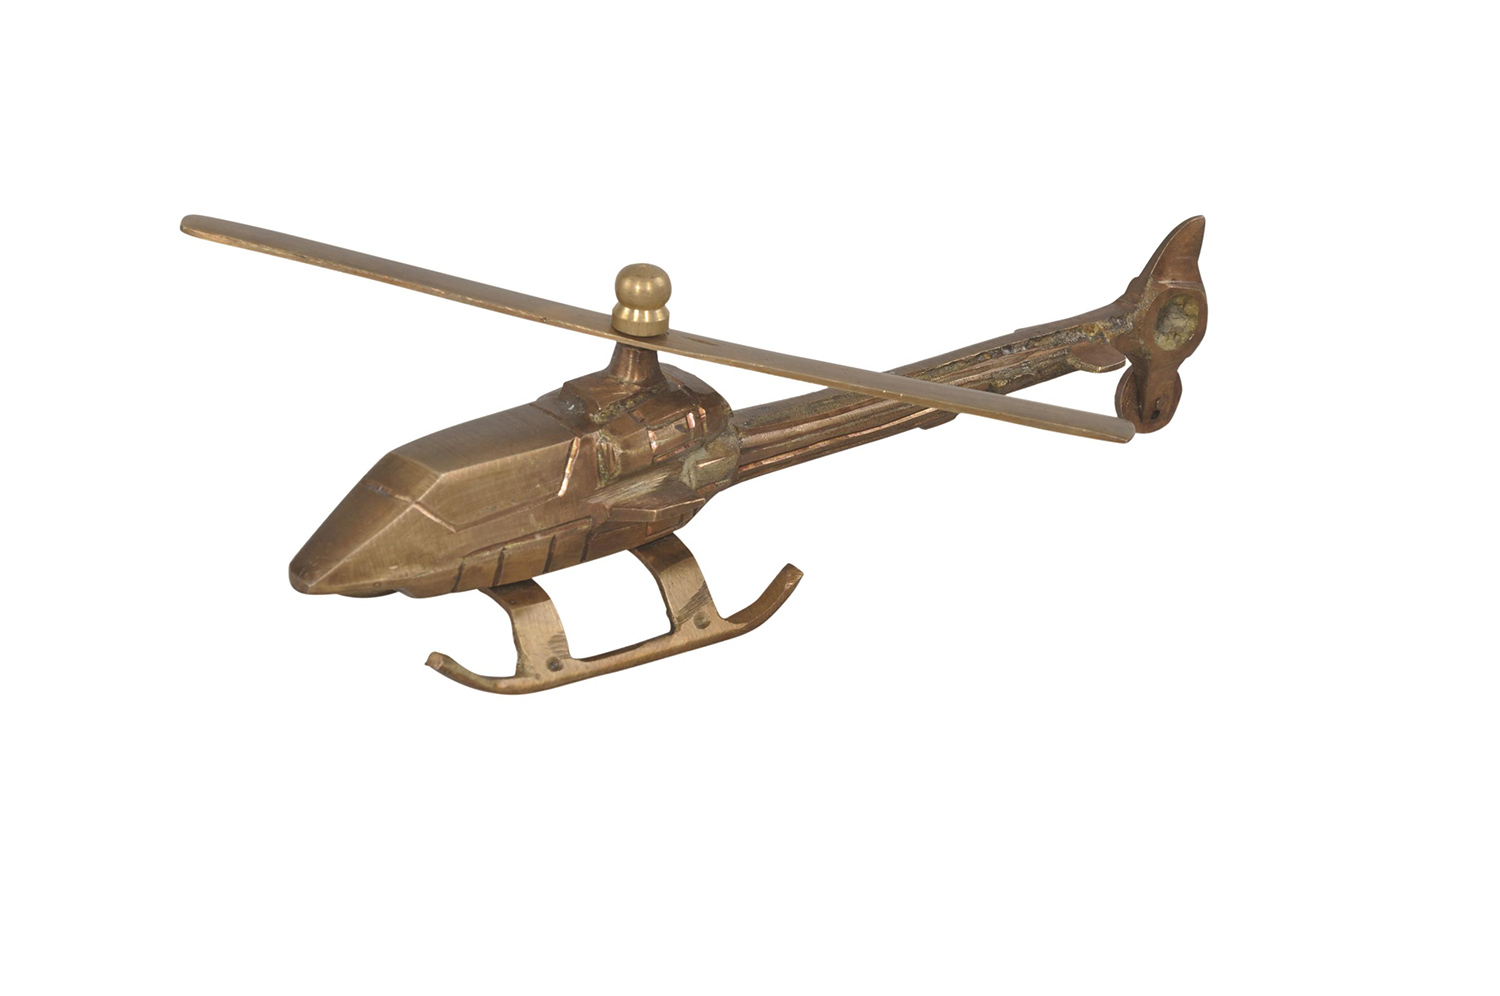 Ren-Wil Helicopter Figurine - Brass